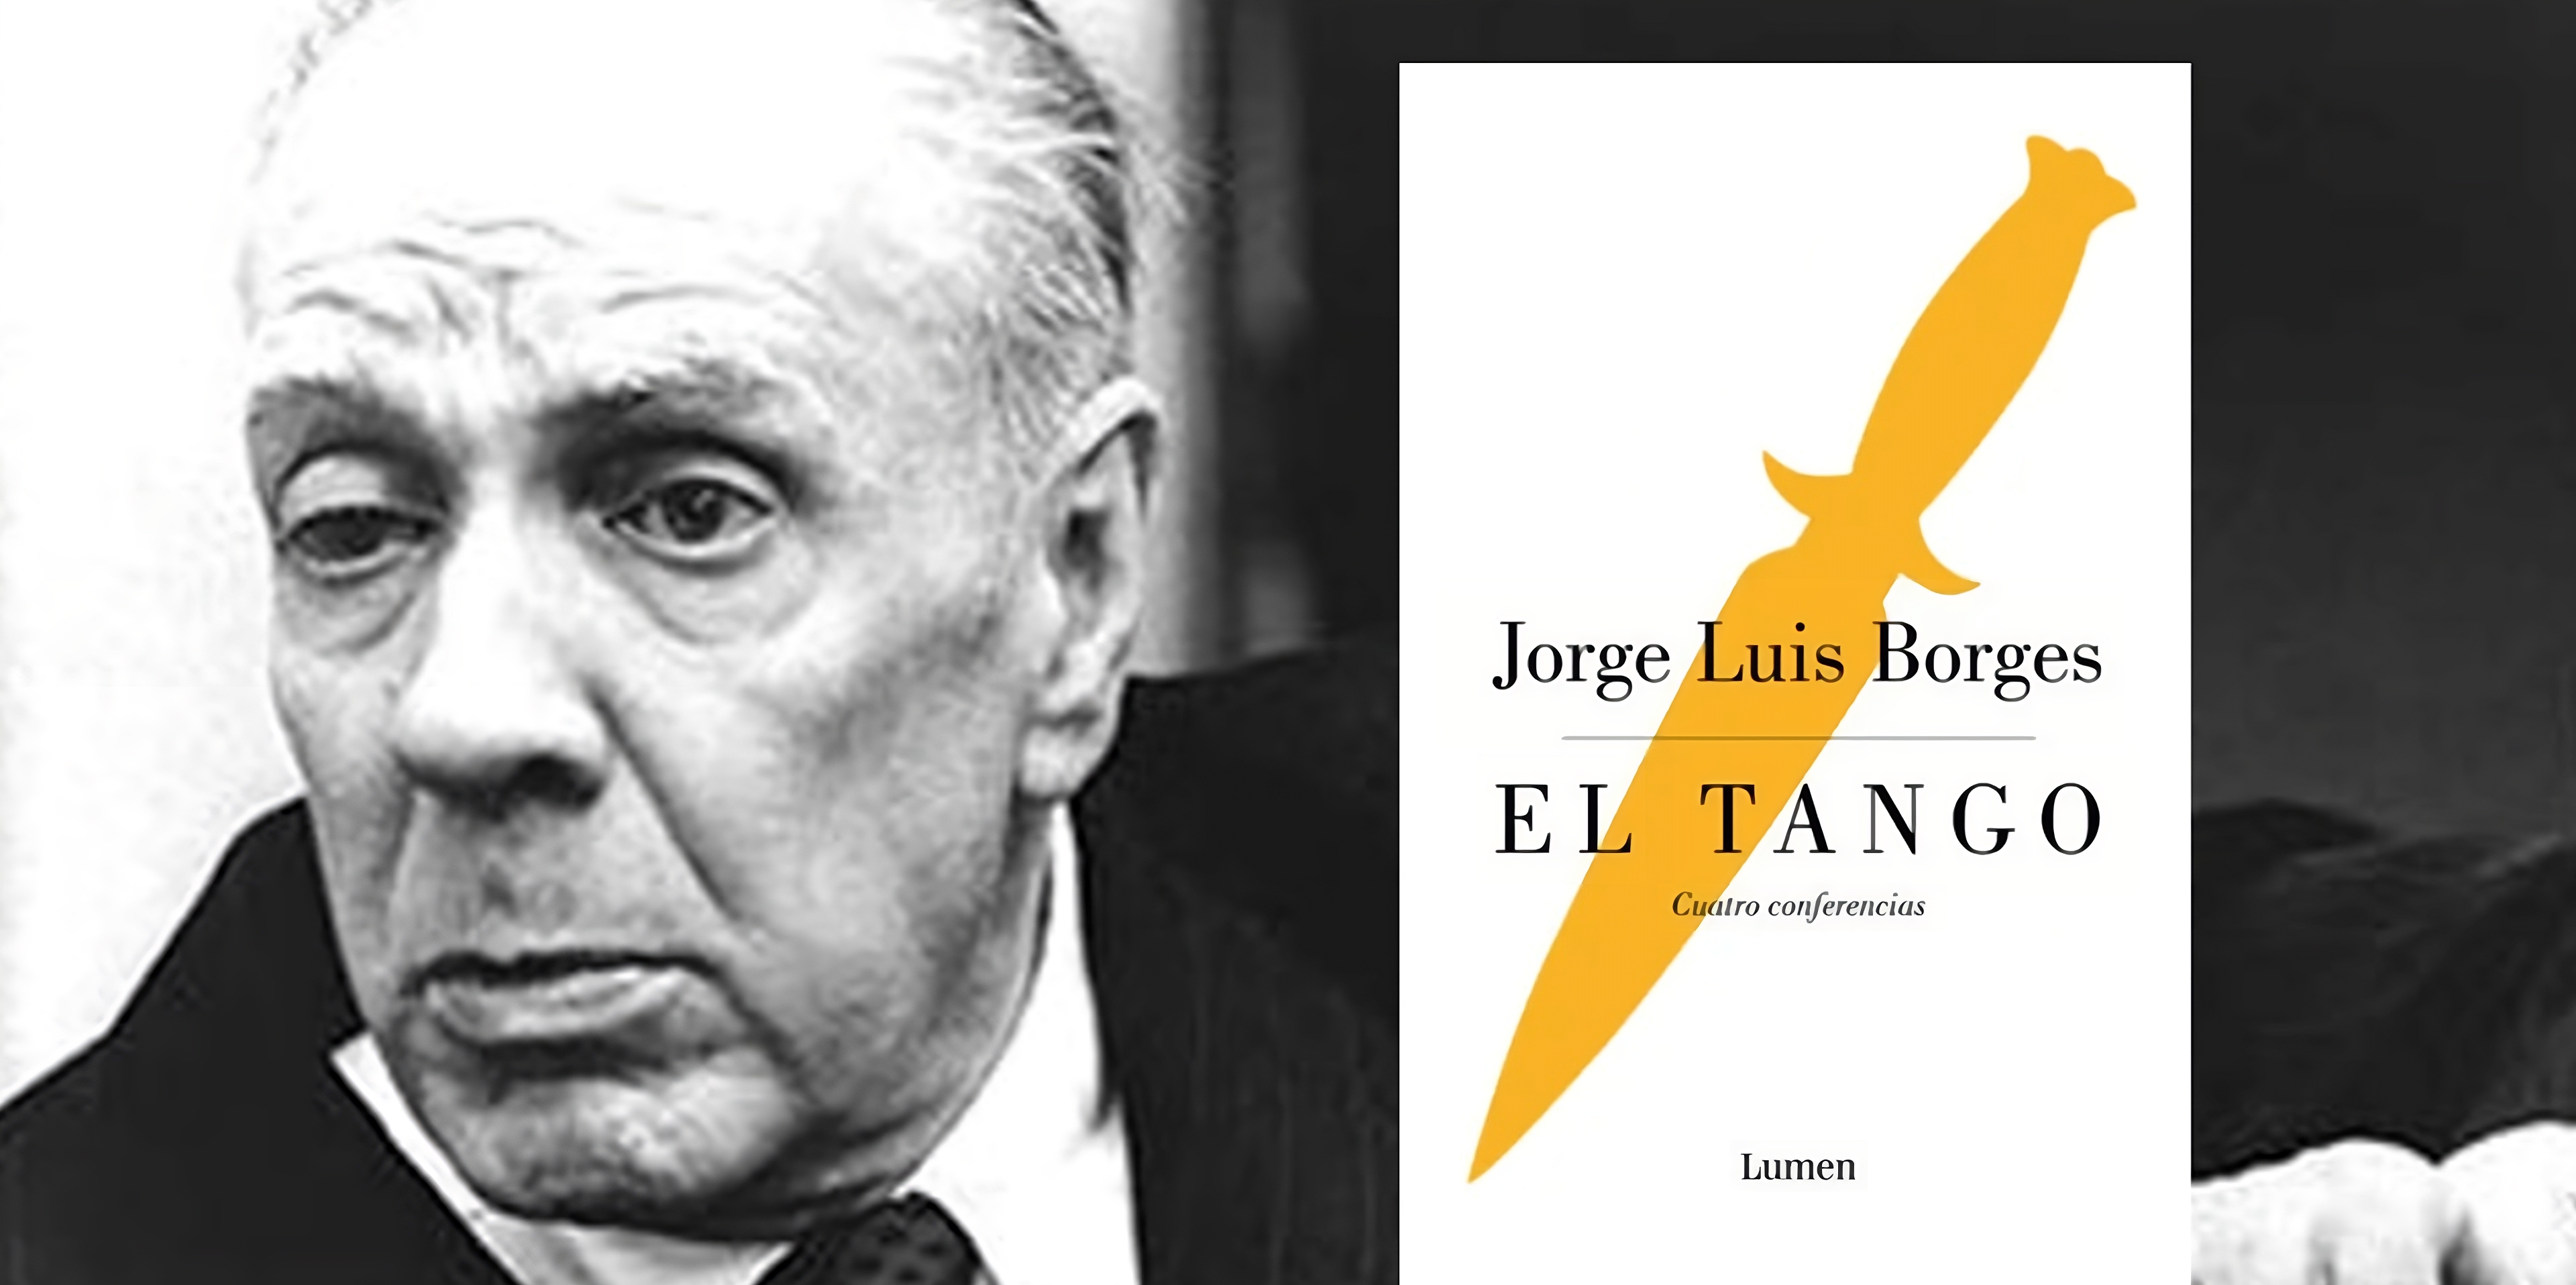 Jorge Luis Borges y su pasión por “El tango”